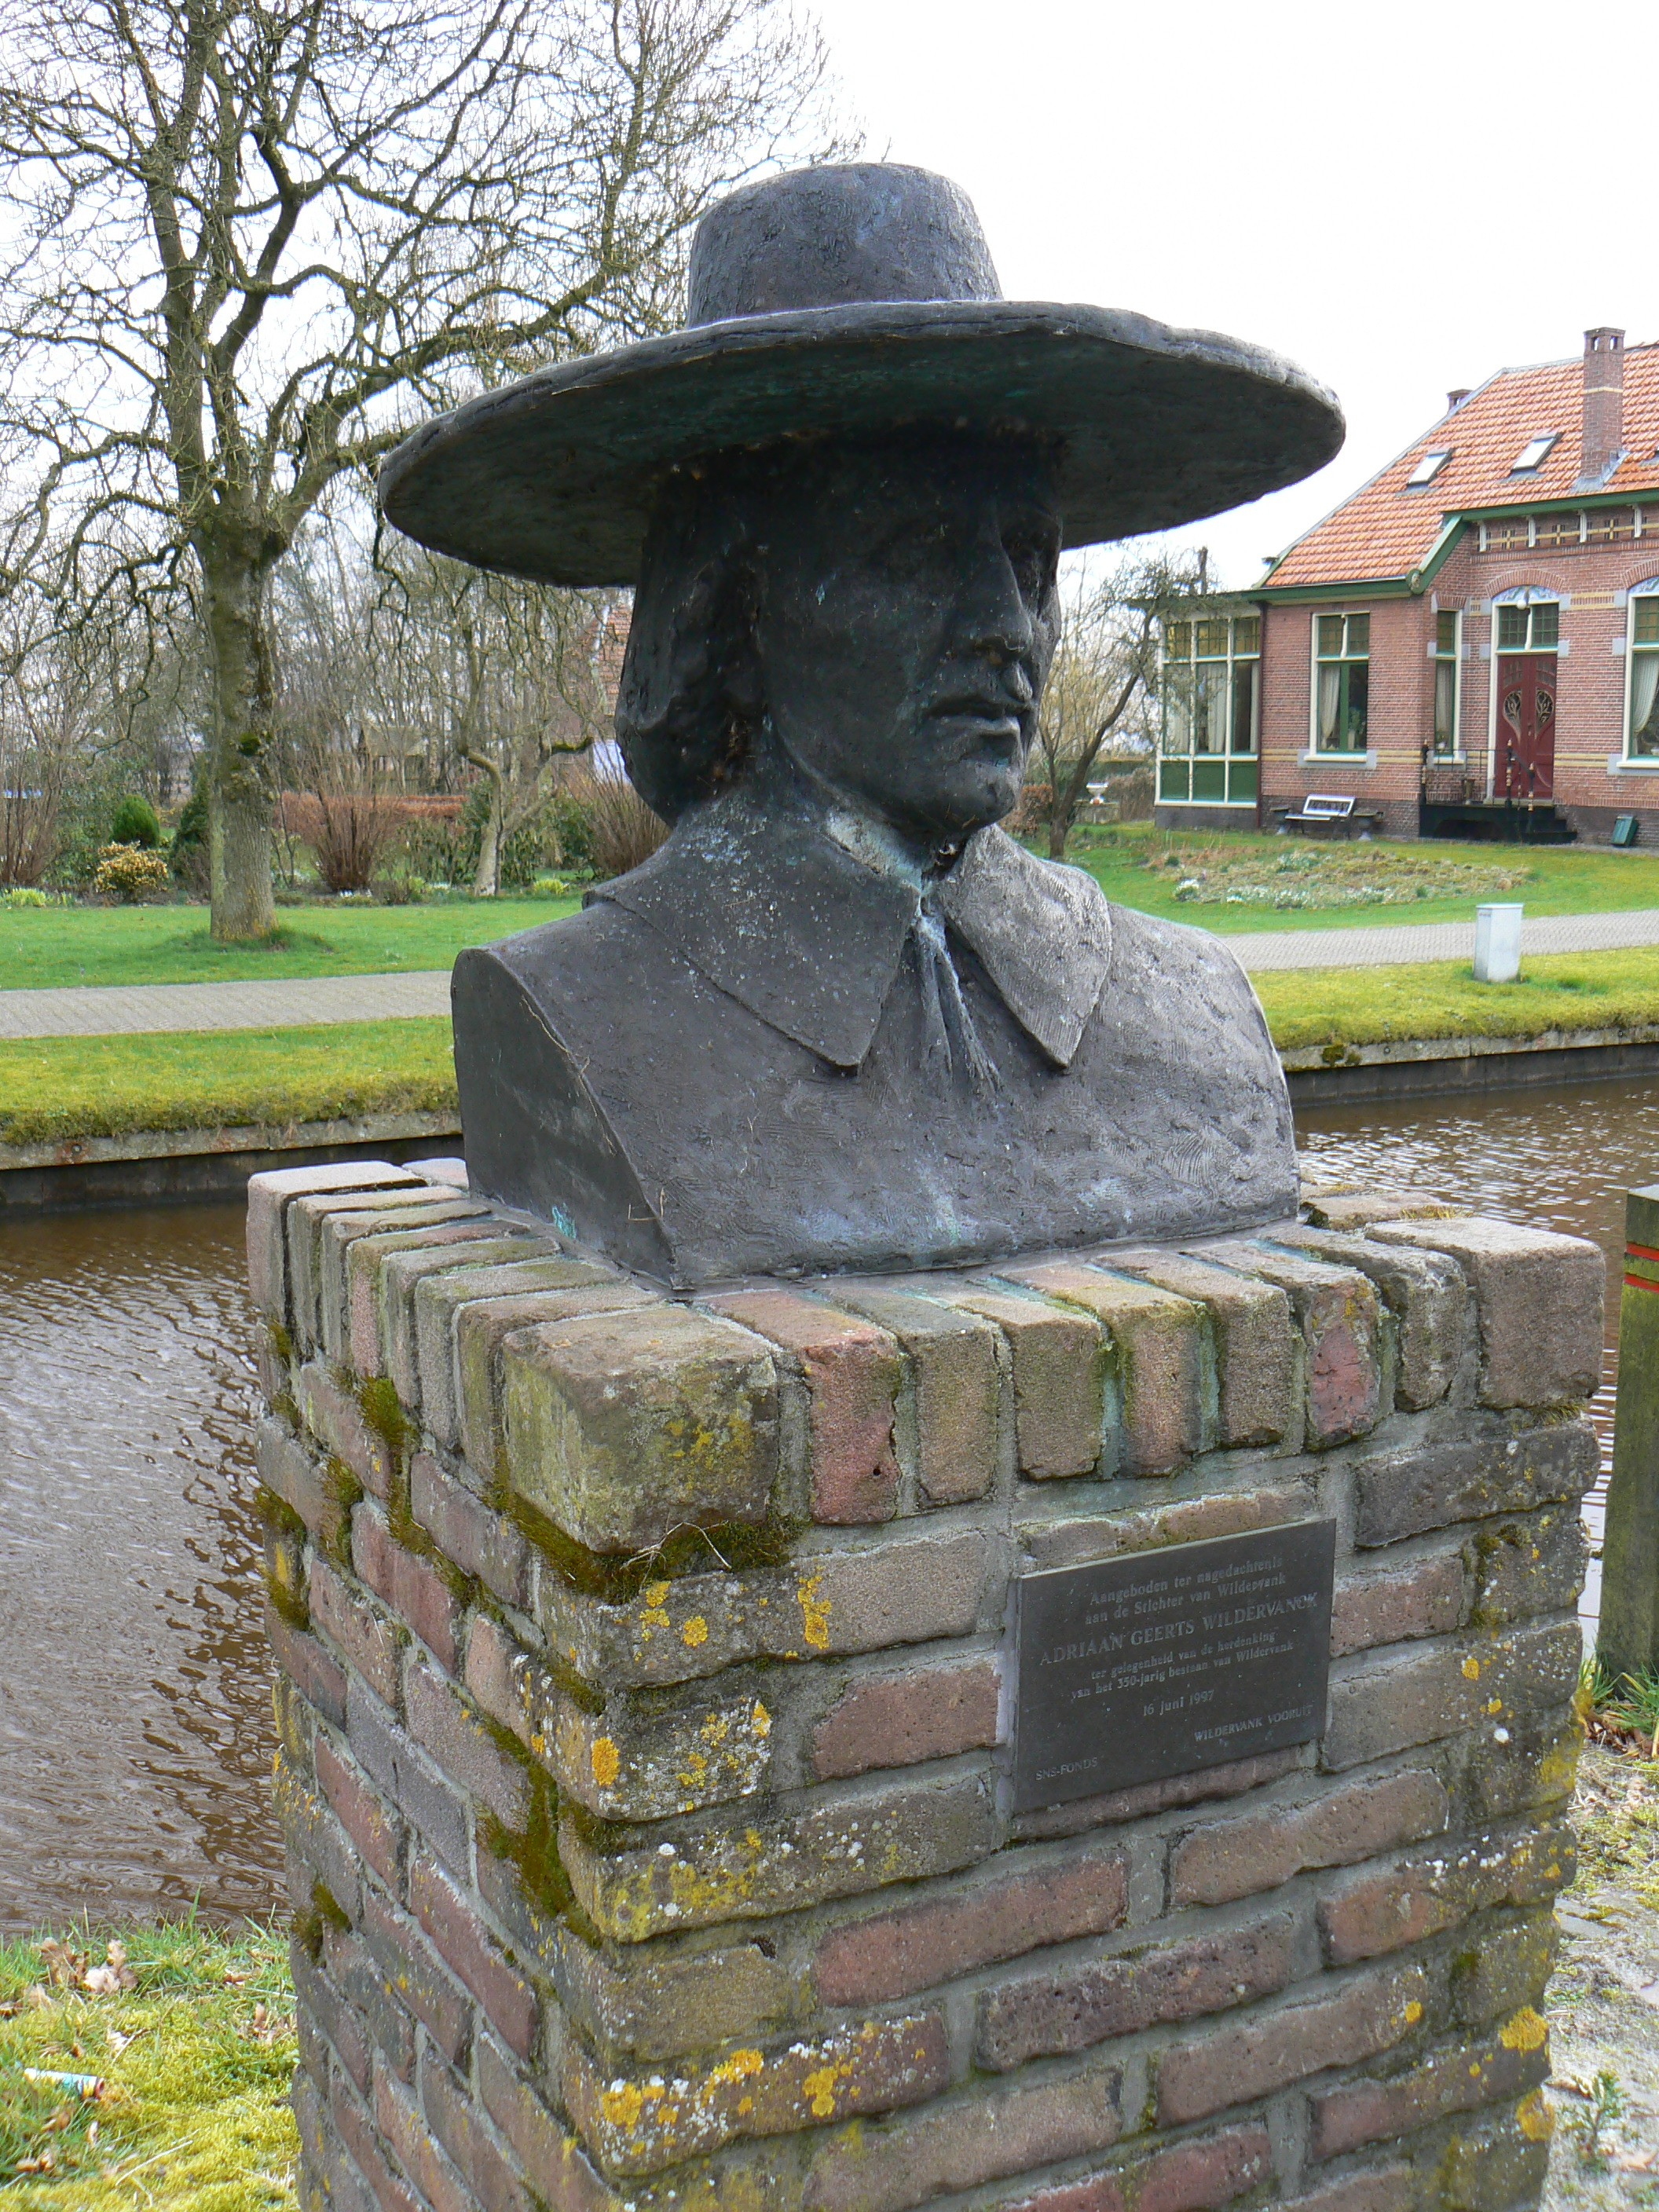 Buste/sculptuur van Adriaan Geerts Wiildervanck uit 1997 gemaakt door Bert Kiewiet in Wildervank. Foto: Gerardus, 29 februari 2008. Licentie: Publieke Domein.